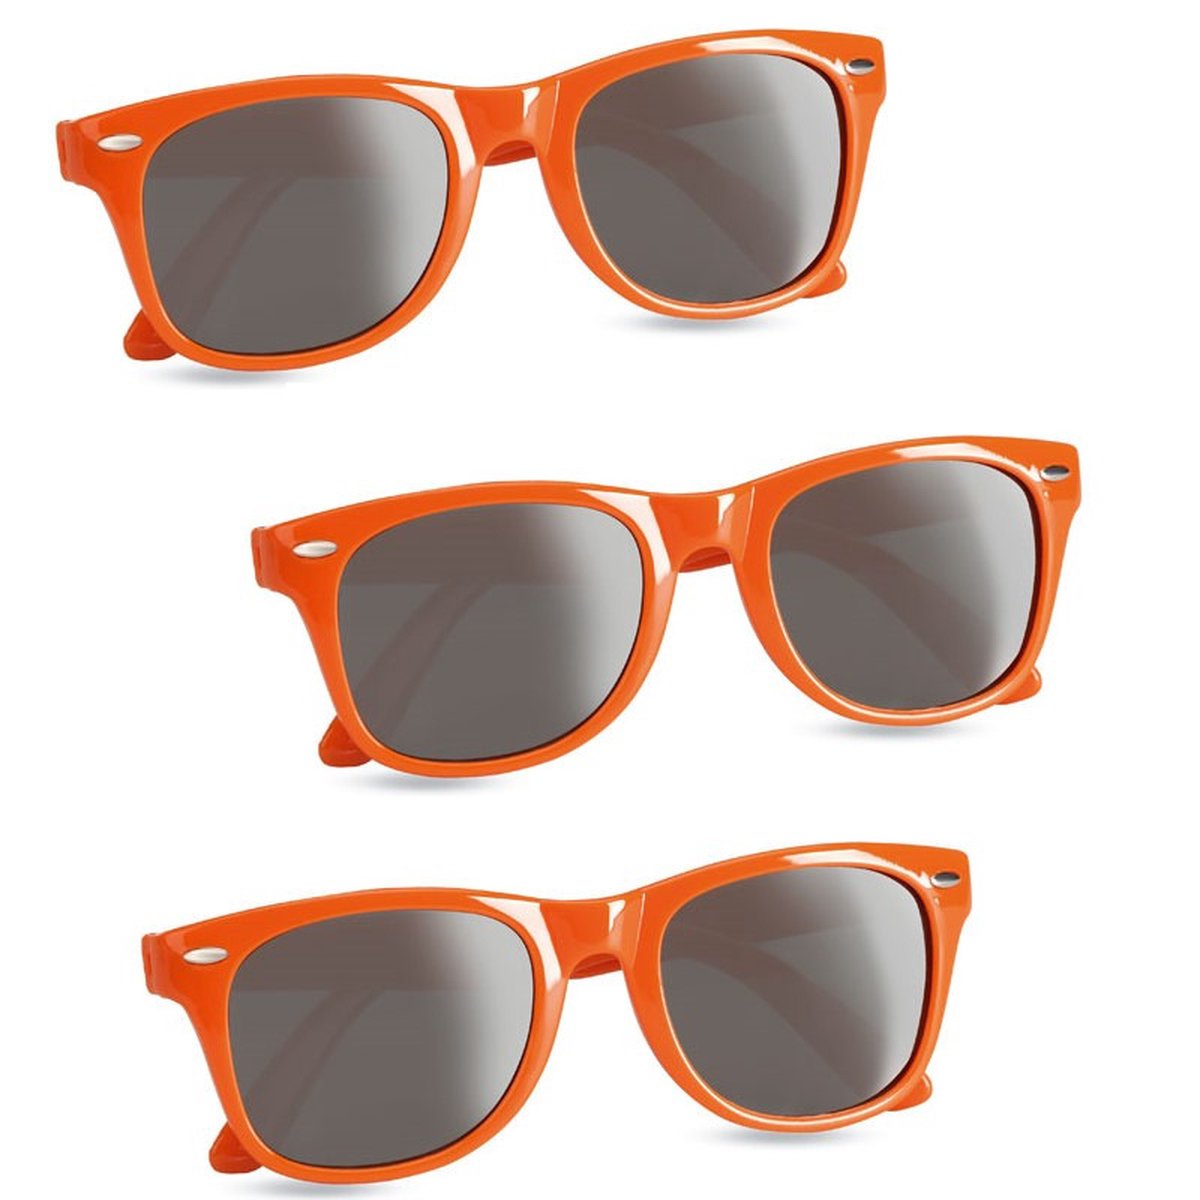 5x stuks hippe zonnebrillen met oranje montuur - UV400 bescherming - Koningsdag - EK/WK verkleed accessoires